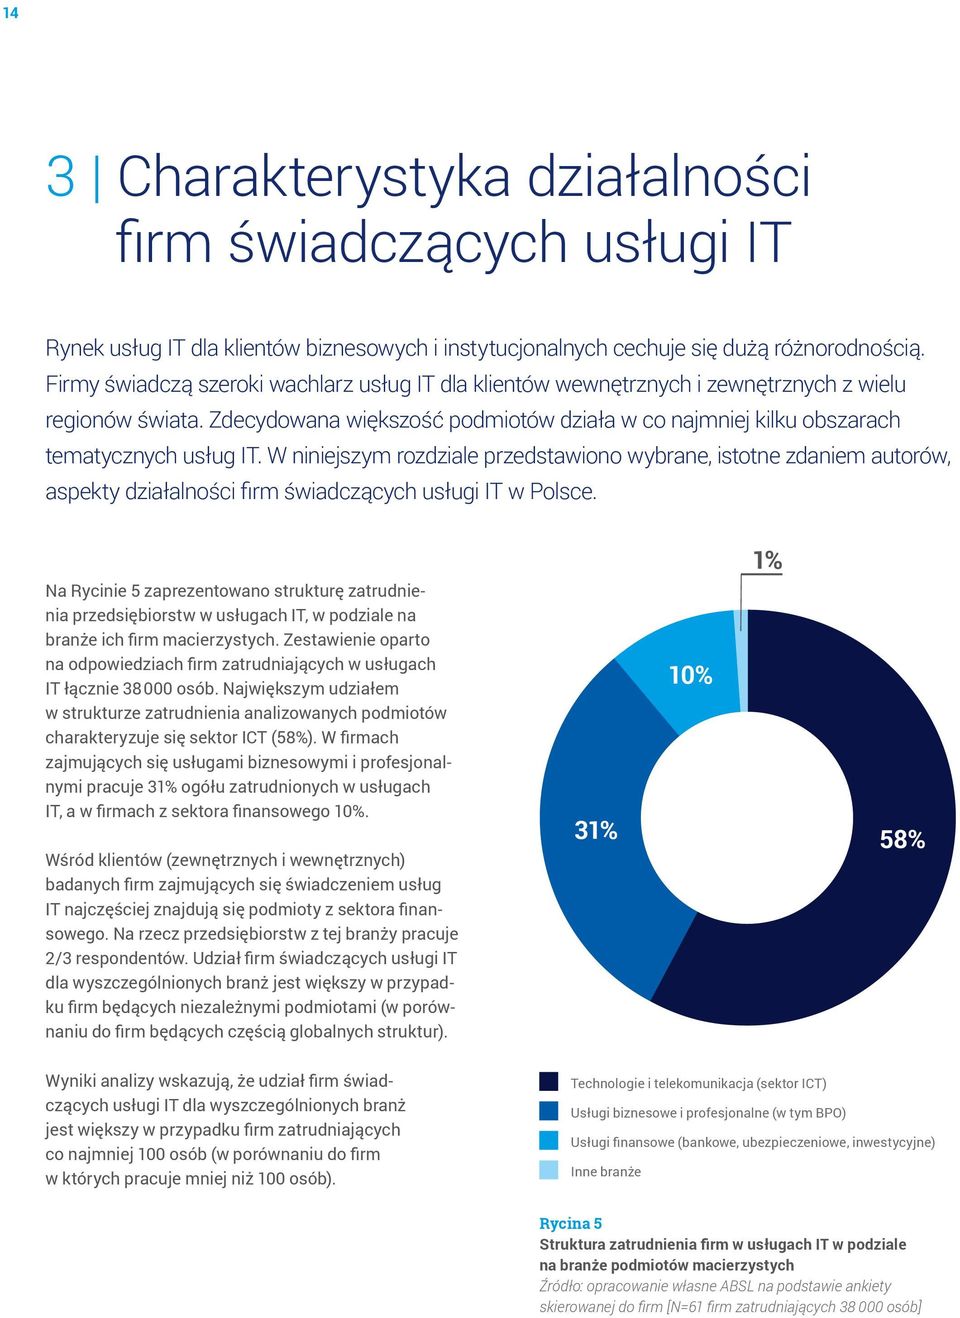 W niniejszym rozdziale przedstawiono wybrane, istotne zdaniem autorów, aspekty działalności firm świadczących usługi IT w Polsce.